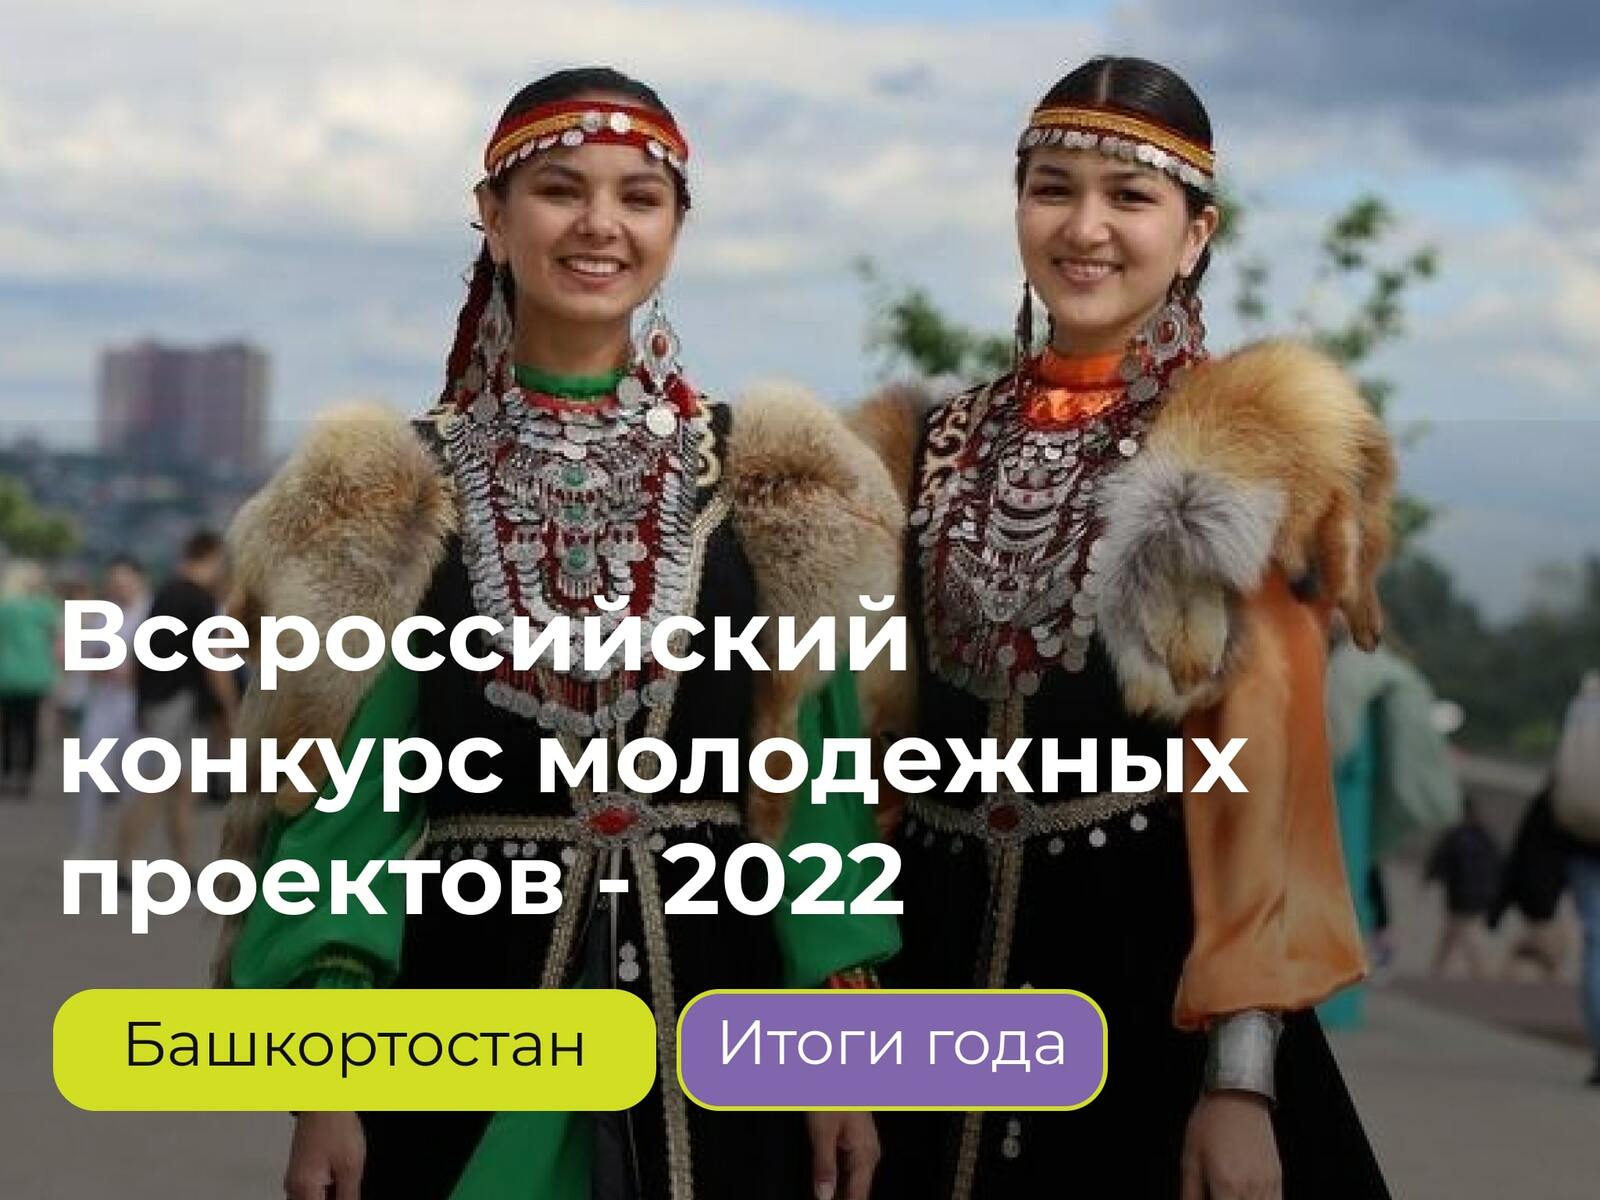 Более 56 миллионов рублей грантовой поддержки привлекли молодежные проекты из Башкортостана в 2022 году